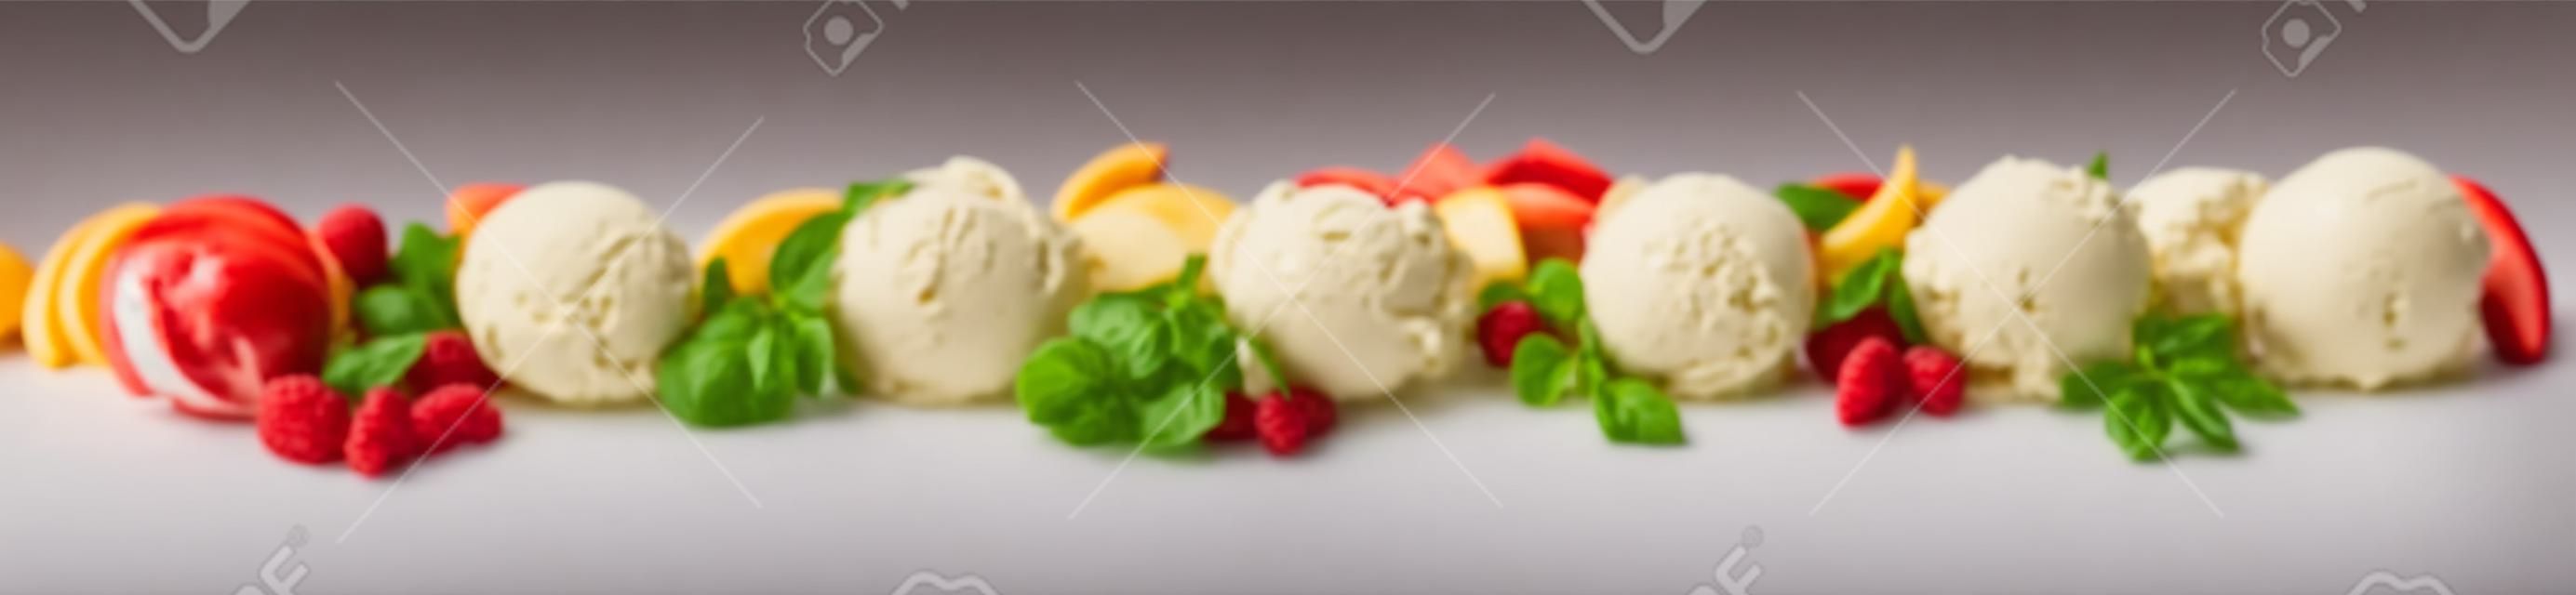 다양한 과일 맛, 바닐라, 초콜릿, 아몬드가 포함된 다양한 이탈리아 아이스크림 디저트가 포함된 넓은 파노라마 배너는 흰색에 신선한 재료가 있는 스쿠프 라인으로 표시됩니다.